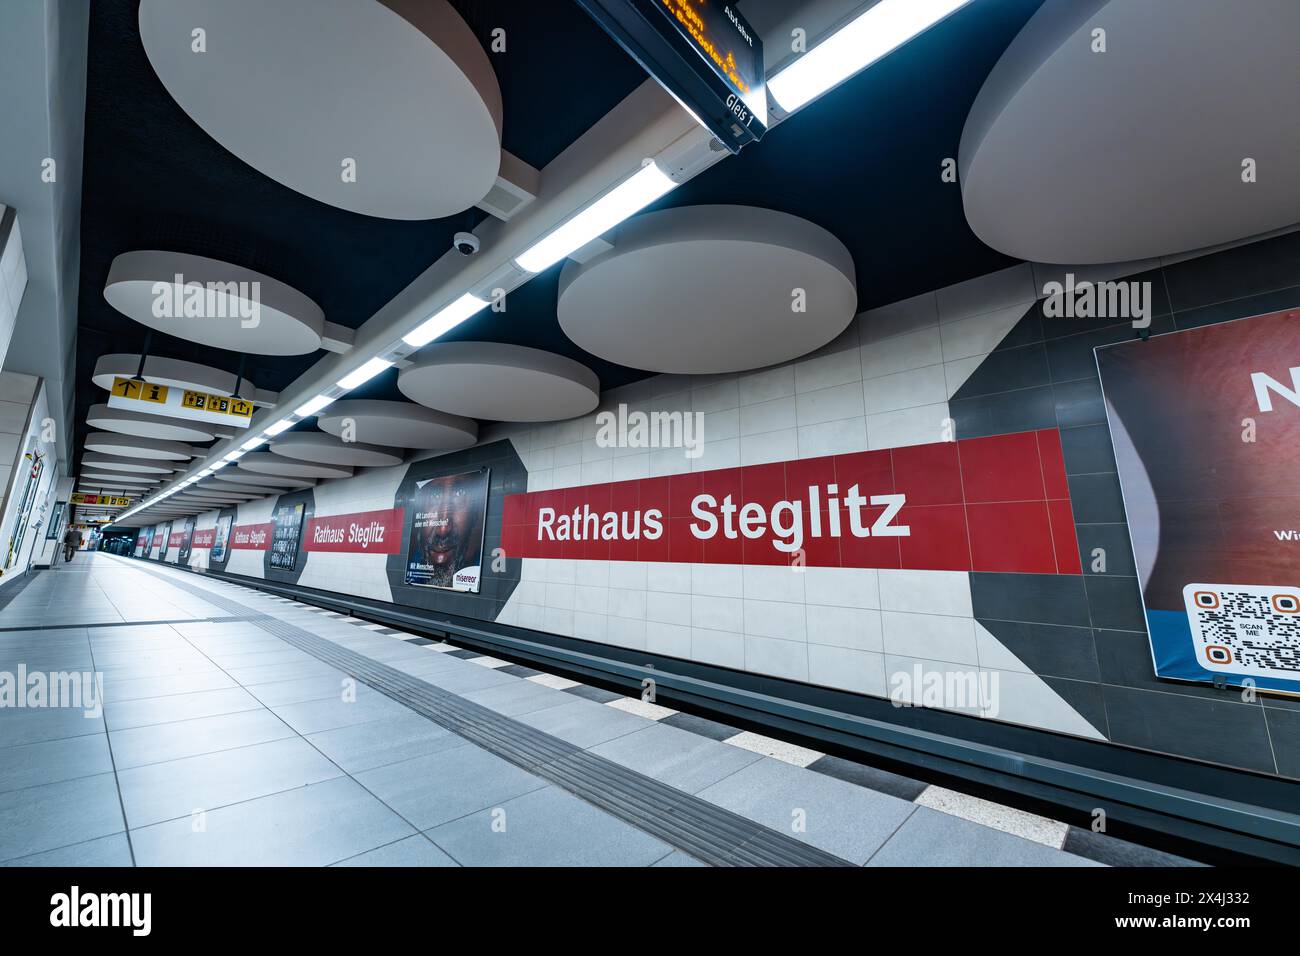 Station de métro moderne avec publicité sur piliers et plate-forme en lignes claires, Rathaus Steglitz, Berlin, Allemagne, Europe Banque D'Images